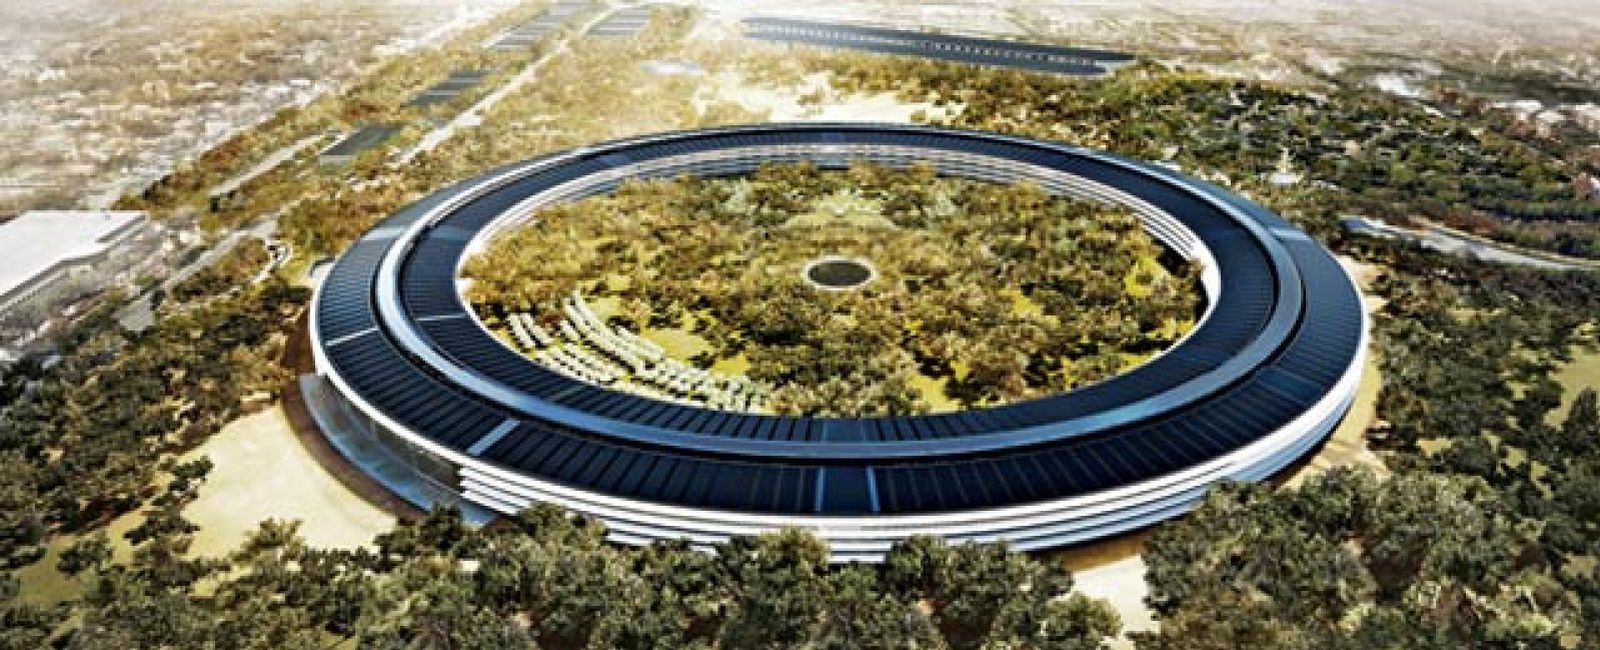 Apple: La nueva -y megalómana- sede de Apple costará casi 4.000